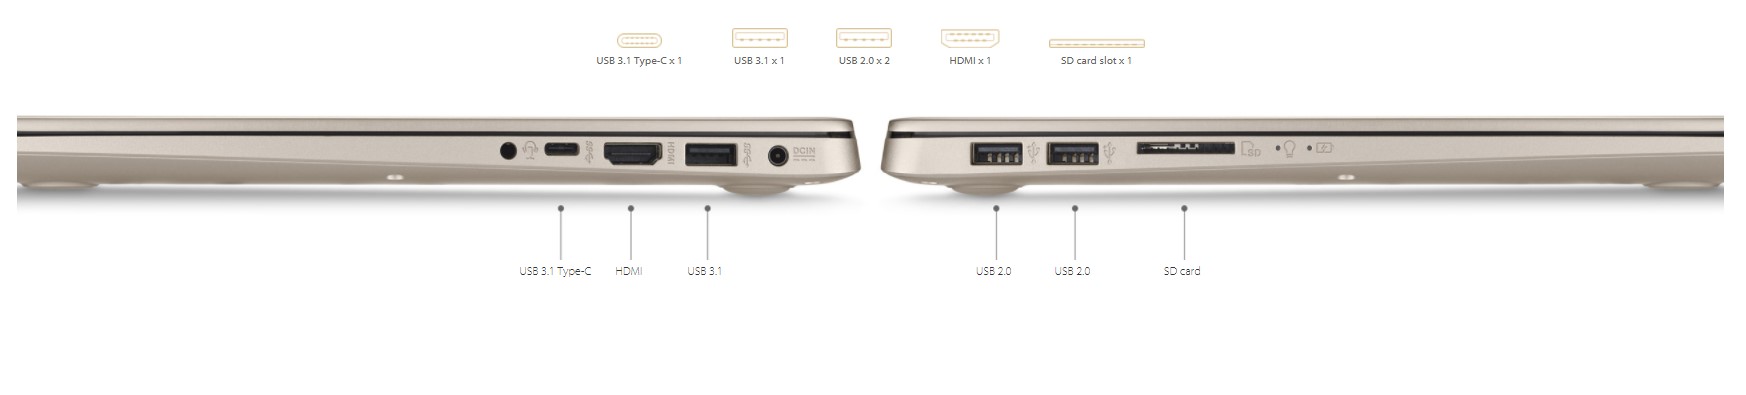 Asus vivobook сетевой драйвер. Ноутбук асус Вивобук разъемы. ASUS VIVOBOOK 17 расположение портов. ASUS ZENBOOK разъемы HDMI. ASUS VIVOBOOK 15 разъём для микрофона.